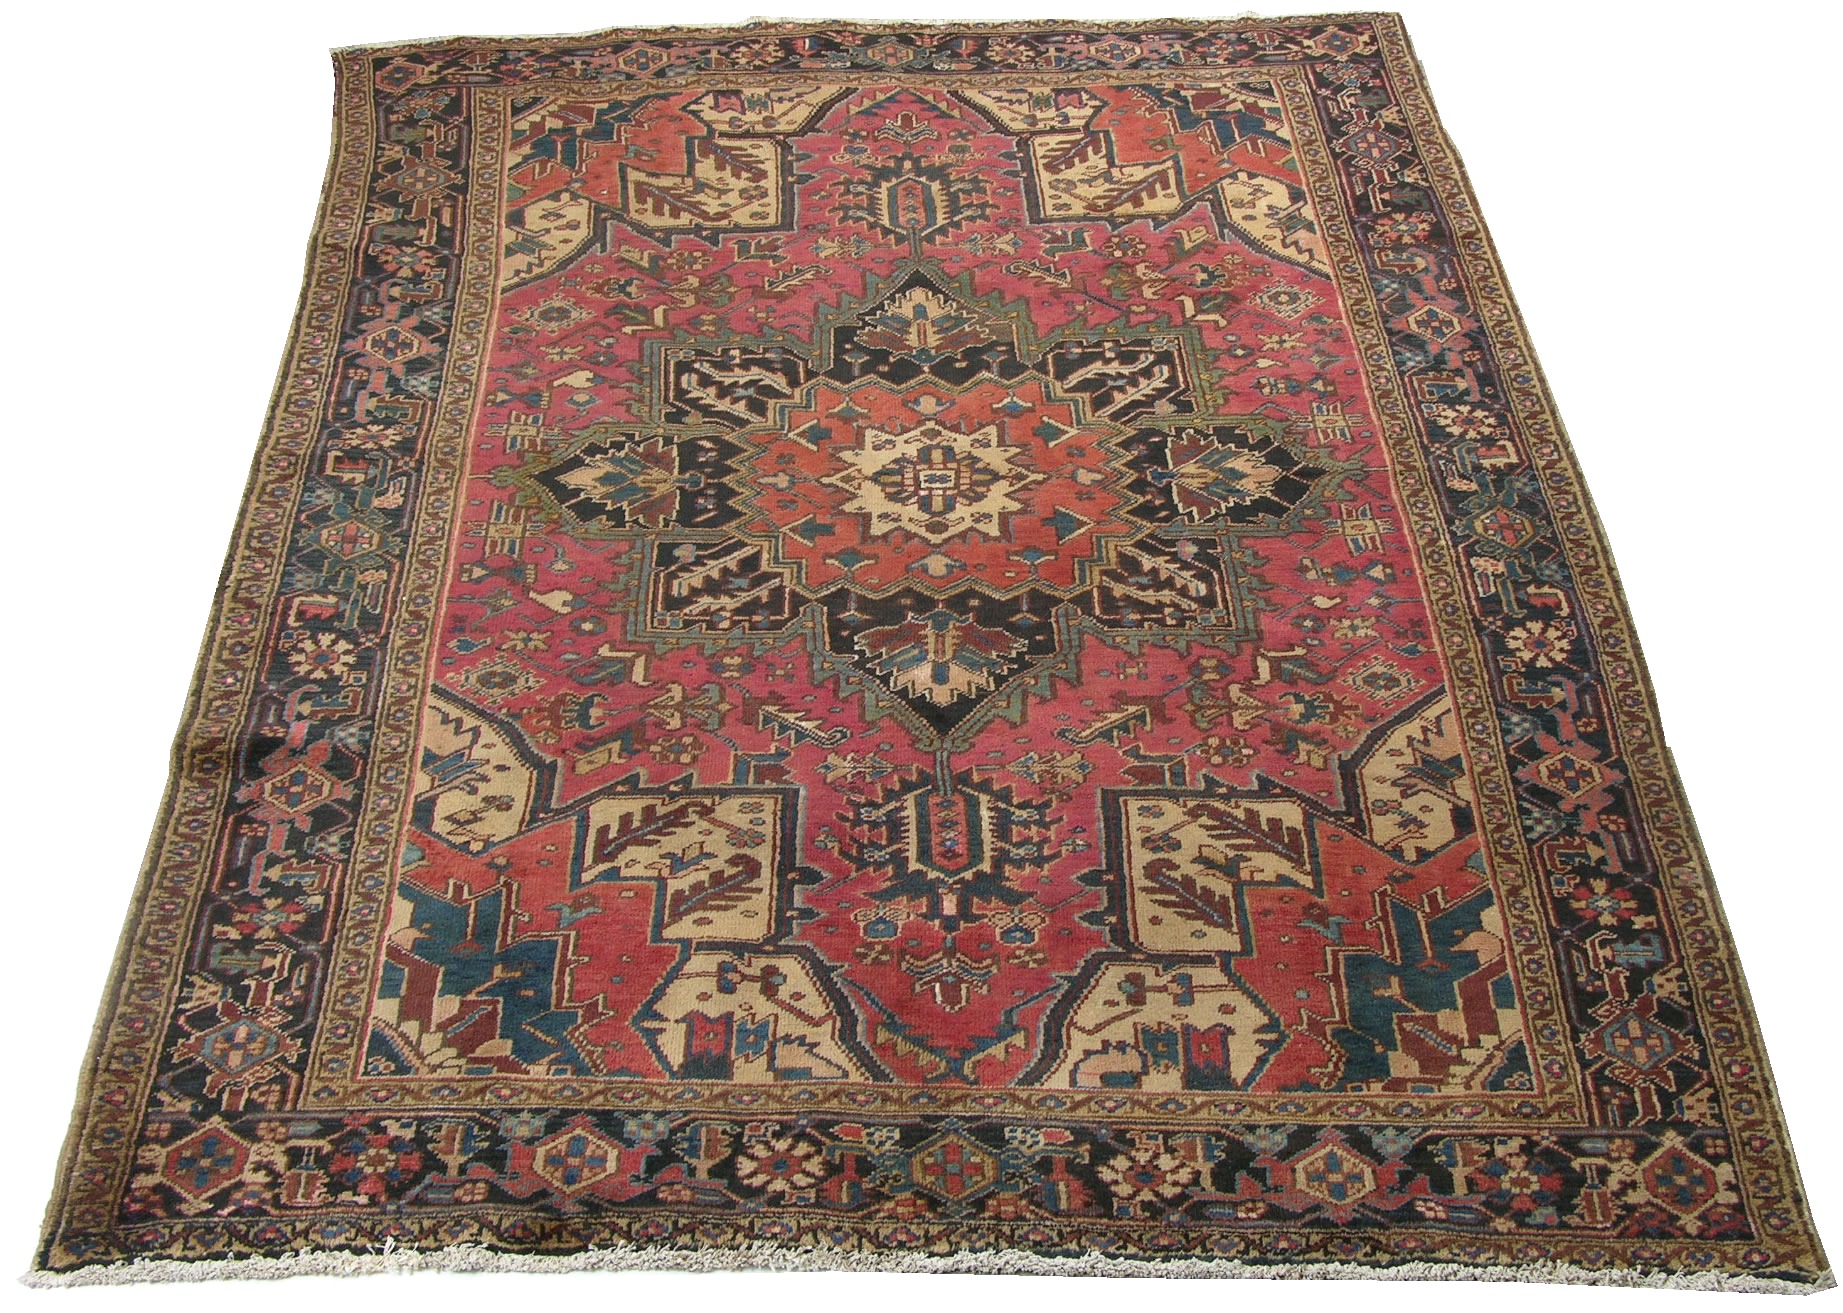 A Persian Carpet , 03.08.08, Sold: $201.25